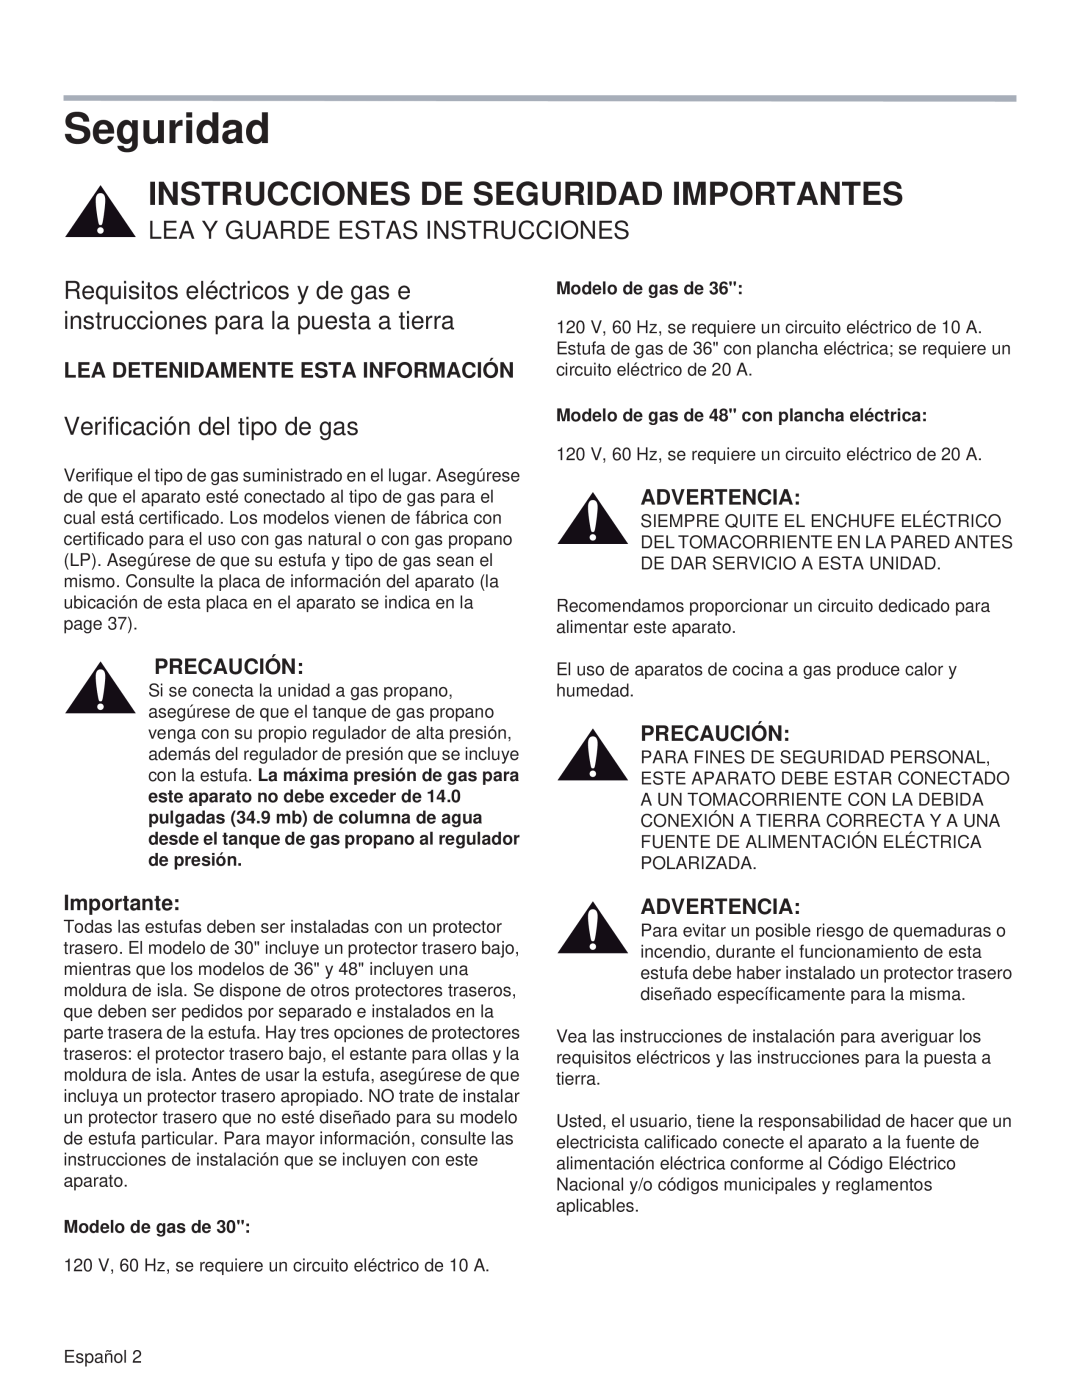 Thermador PRG36 Instrucciones De Seguridad Importantes, Lea Y Guarde Estas Instrucciones, Verificación del tipo de gas 